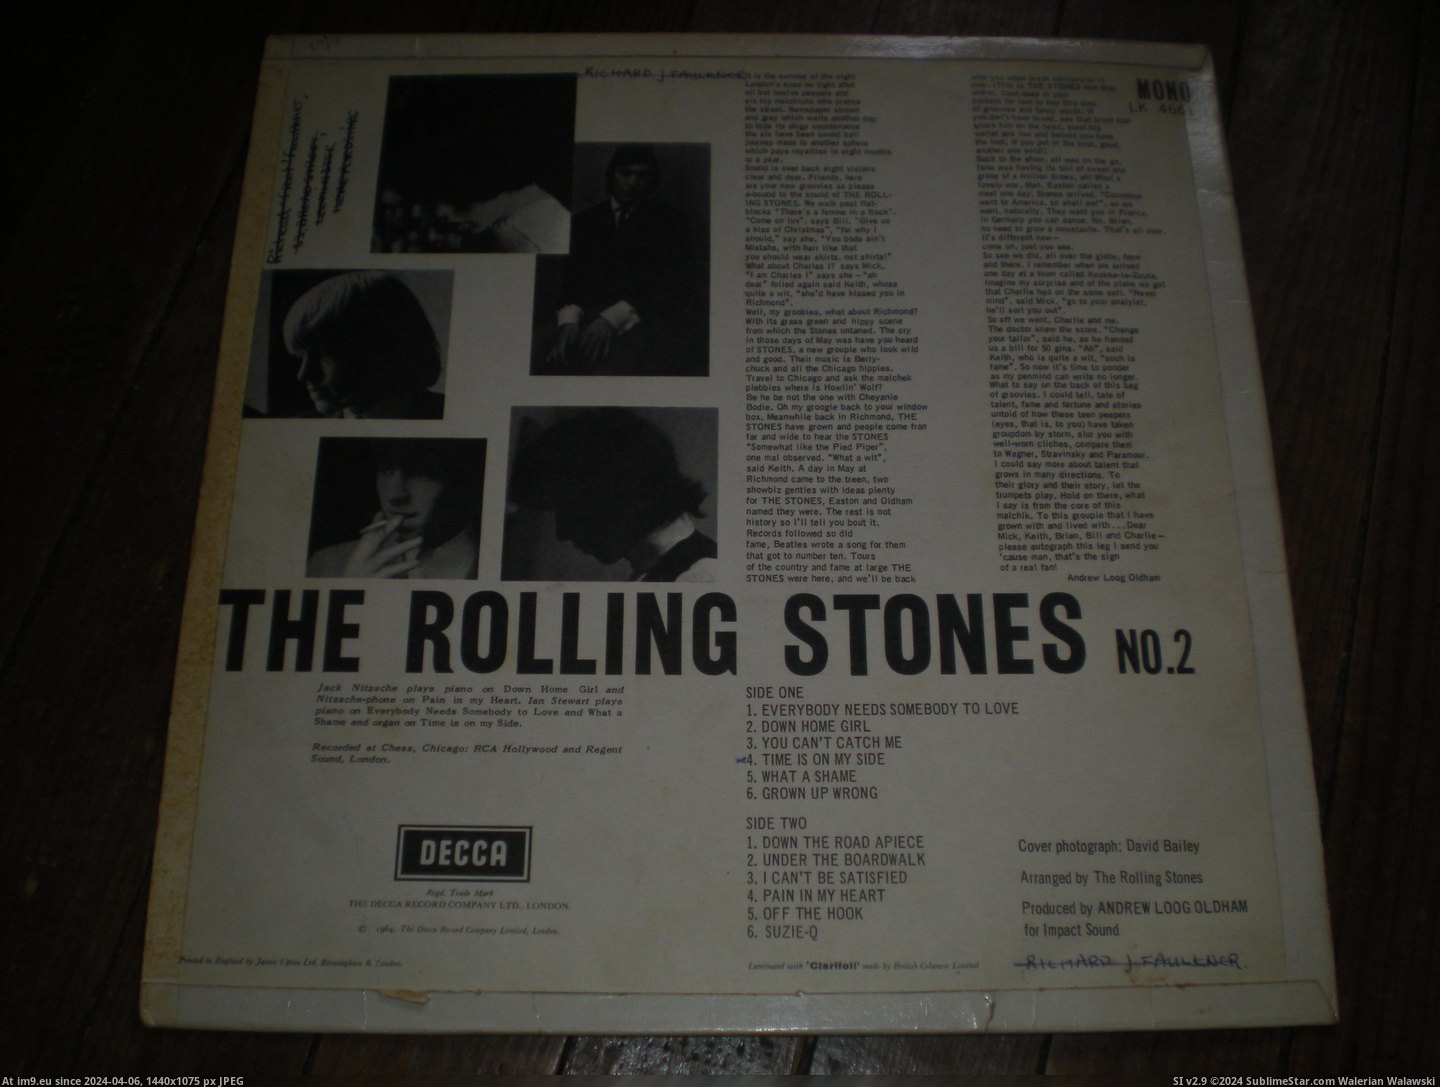  #Stones  Stones 2 12-02-14 6 Pic. (Изображение из альбом new 1))